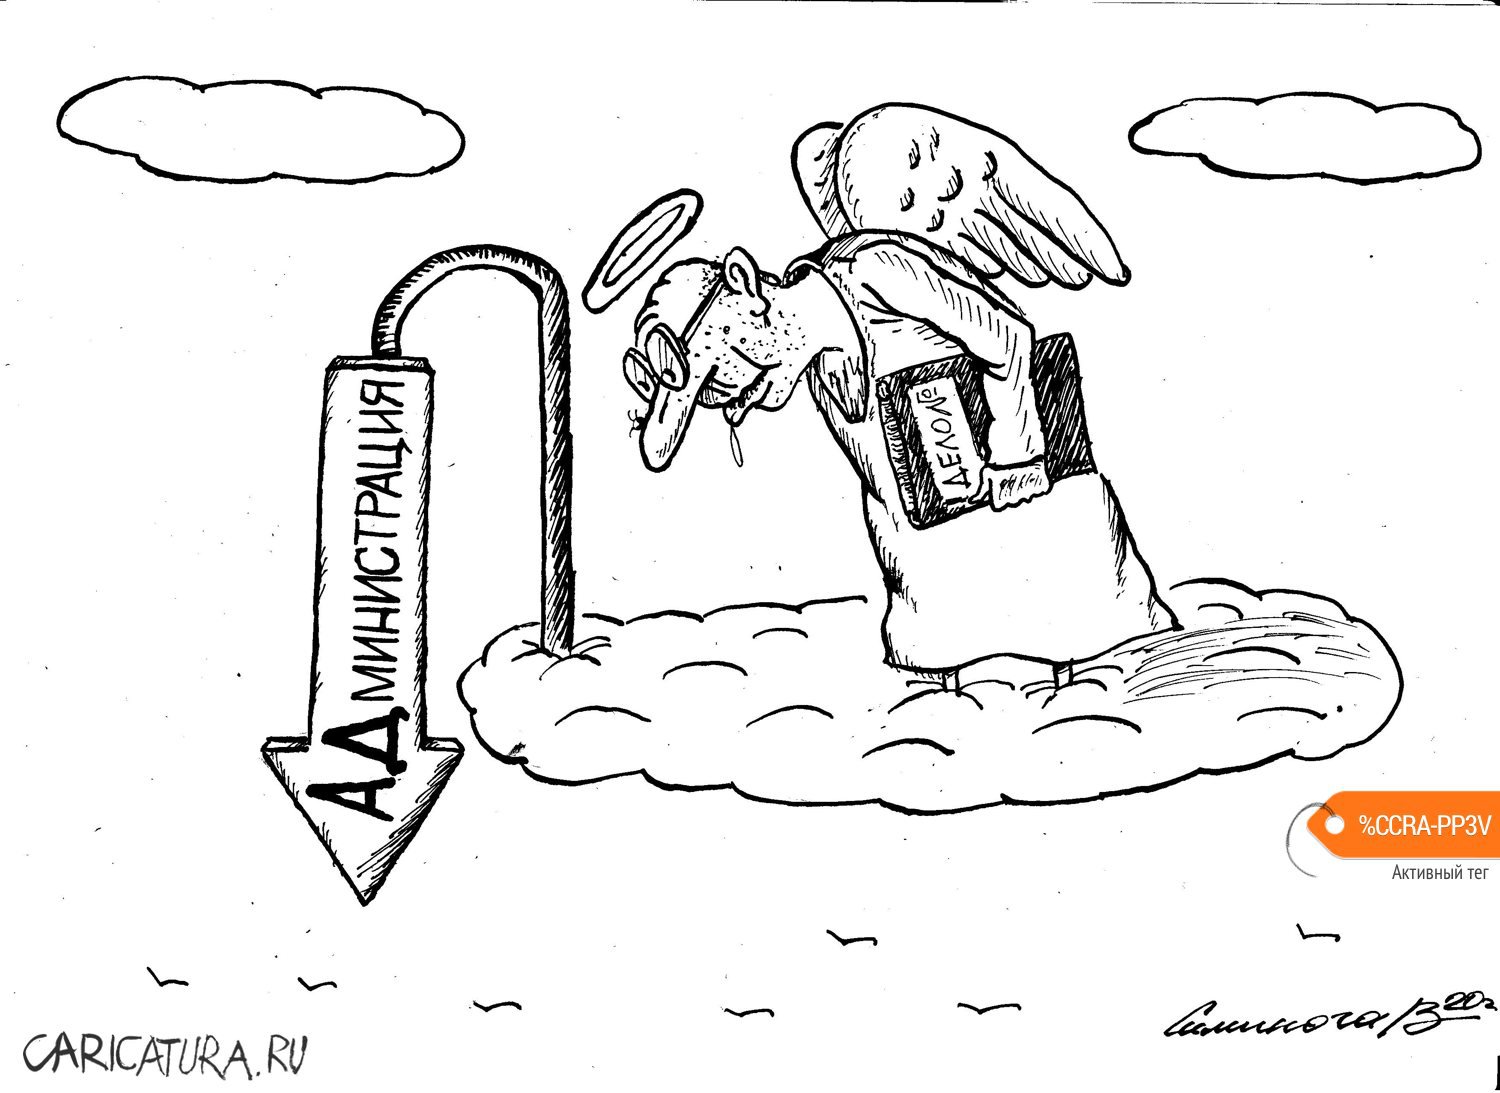 Карикатура "Небеса", Vadim Siminoga